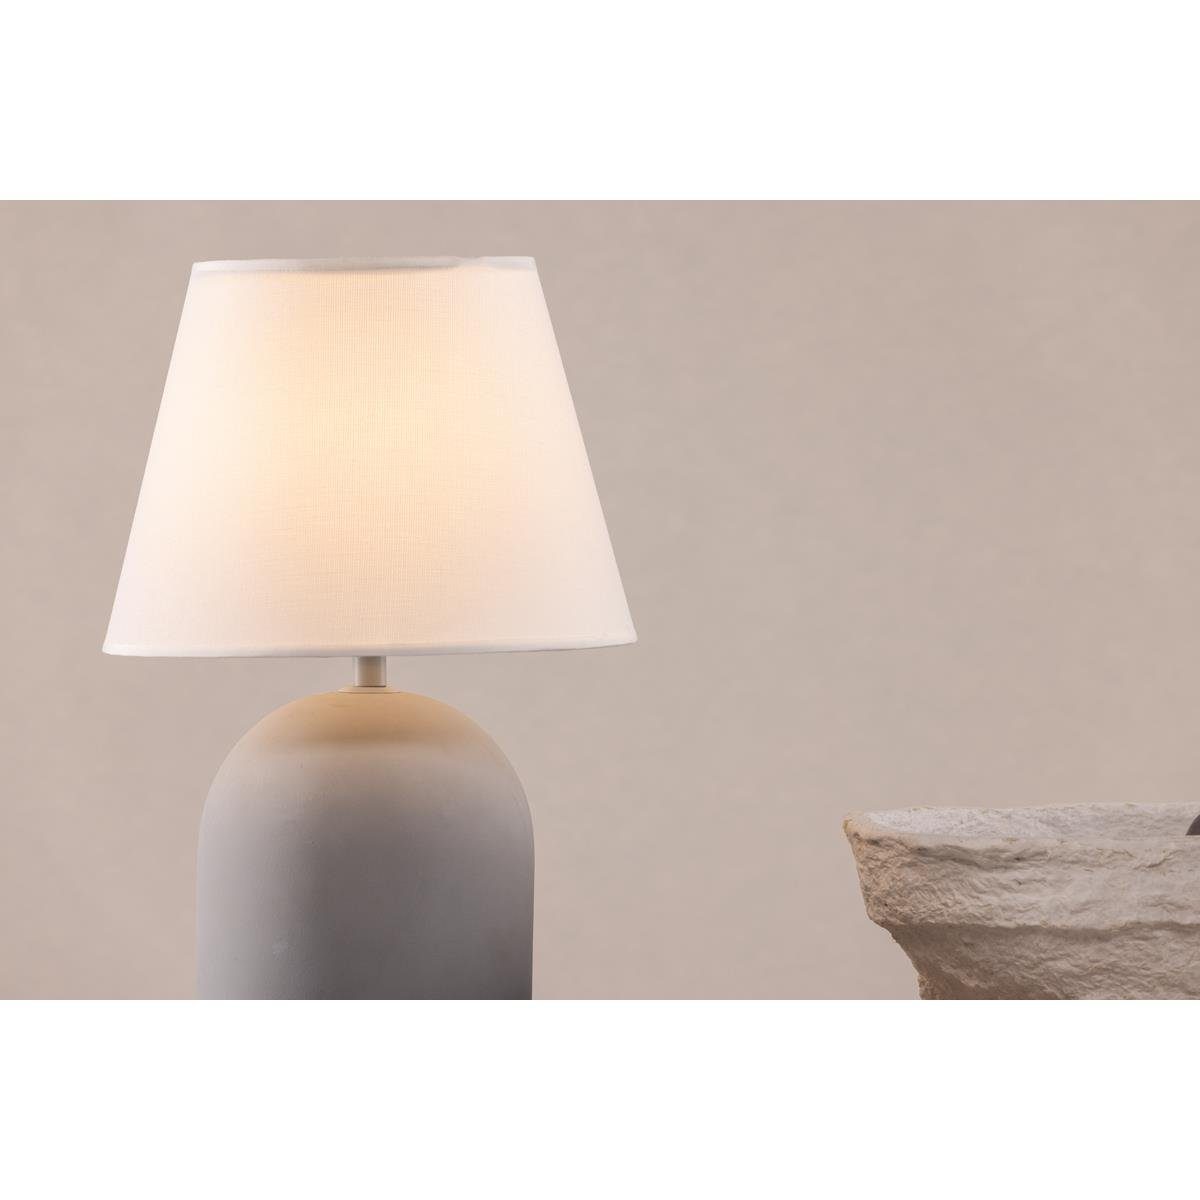 BOURGH Tisch-Tageslichtlampe - weiss in Design, - 37cm Lampe Zischlampe modernem Nachttischlampe STYRSÖ